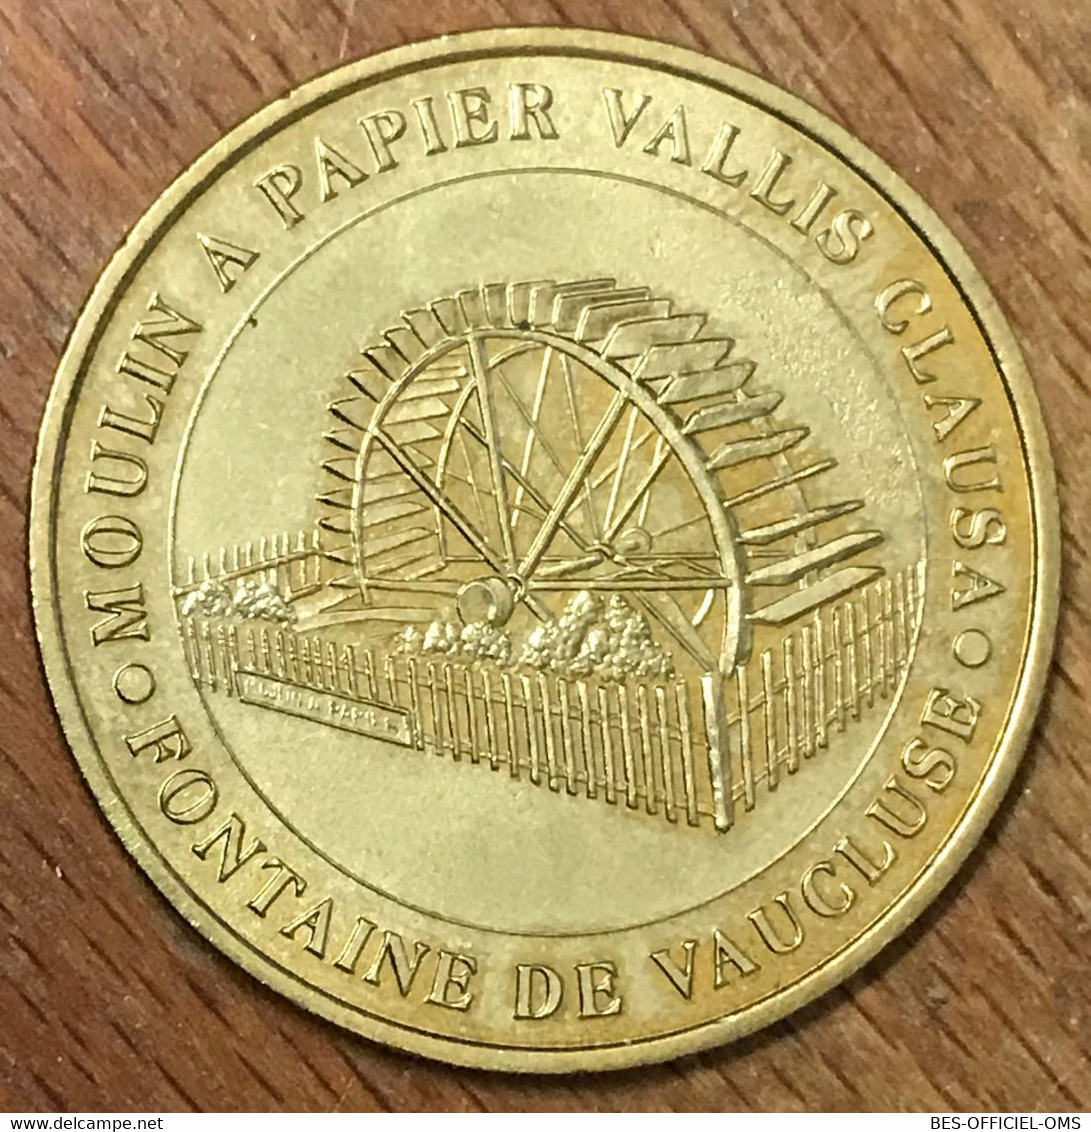 84 FONTAINE DE VAUCLUSE VALLIS CLAUSA MDP 2004 MÉDAILLE SOUVENIR MONNAIE DE PARIS JETON TOURISTIQUE MEDALS COINS TOKENS - 2004